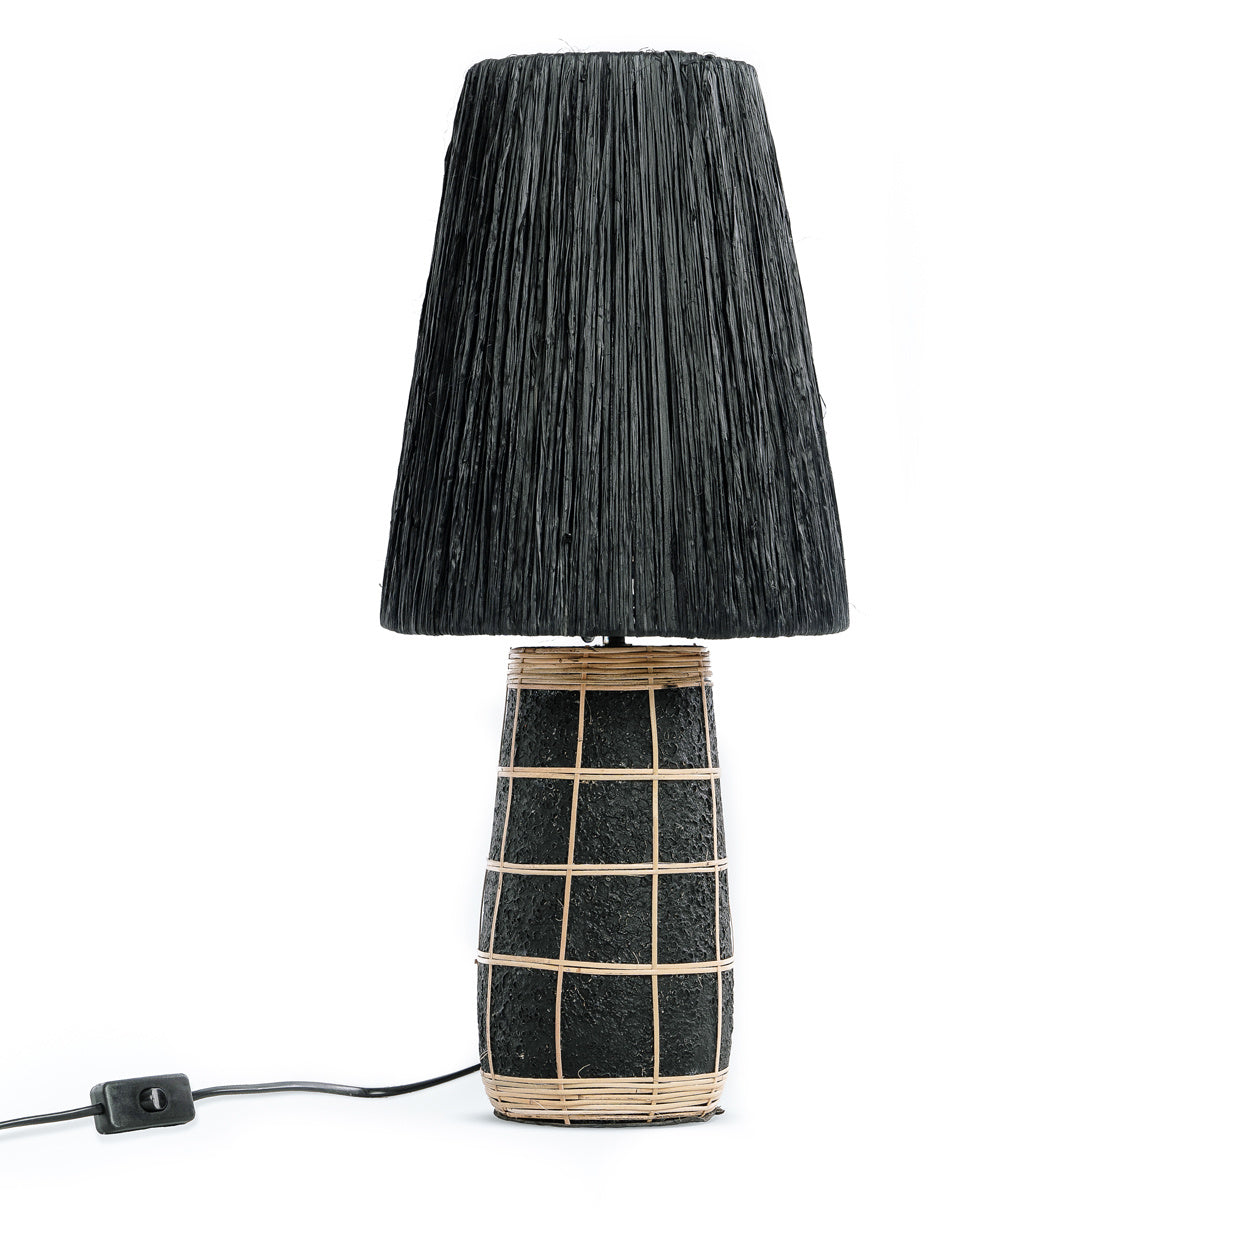 The NAXOS Table Lamp Natural Black